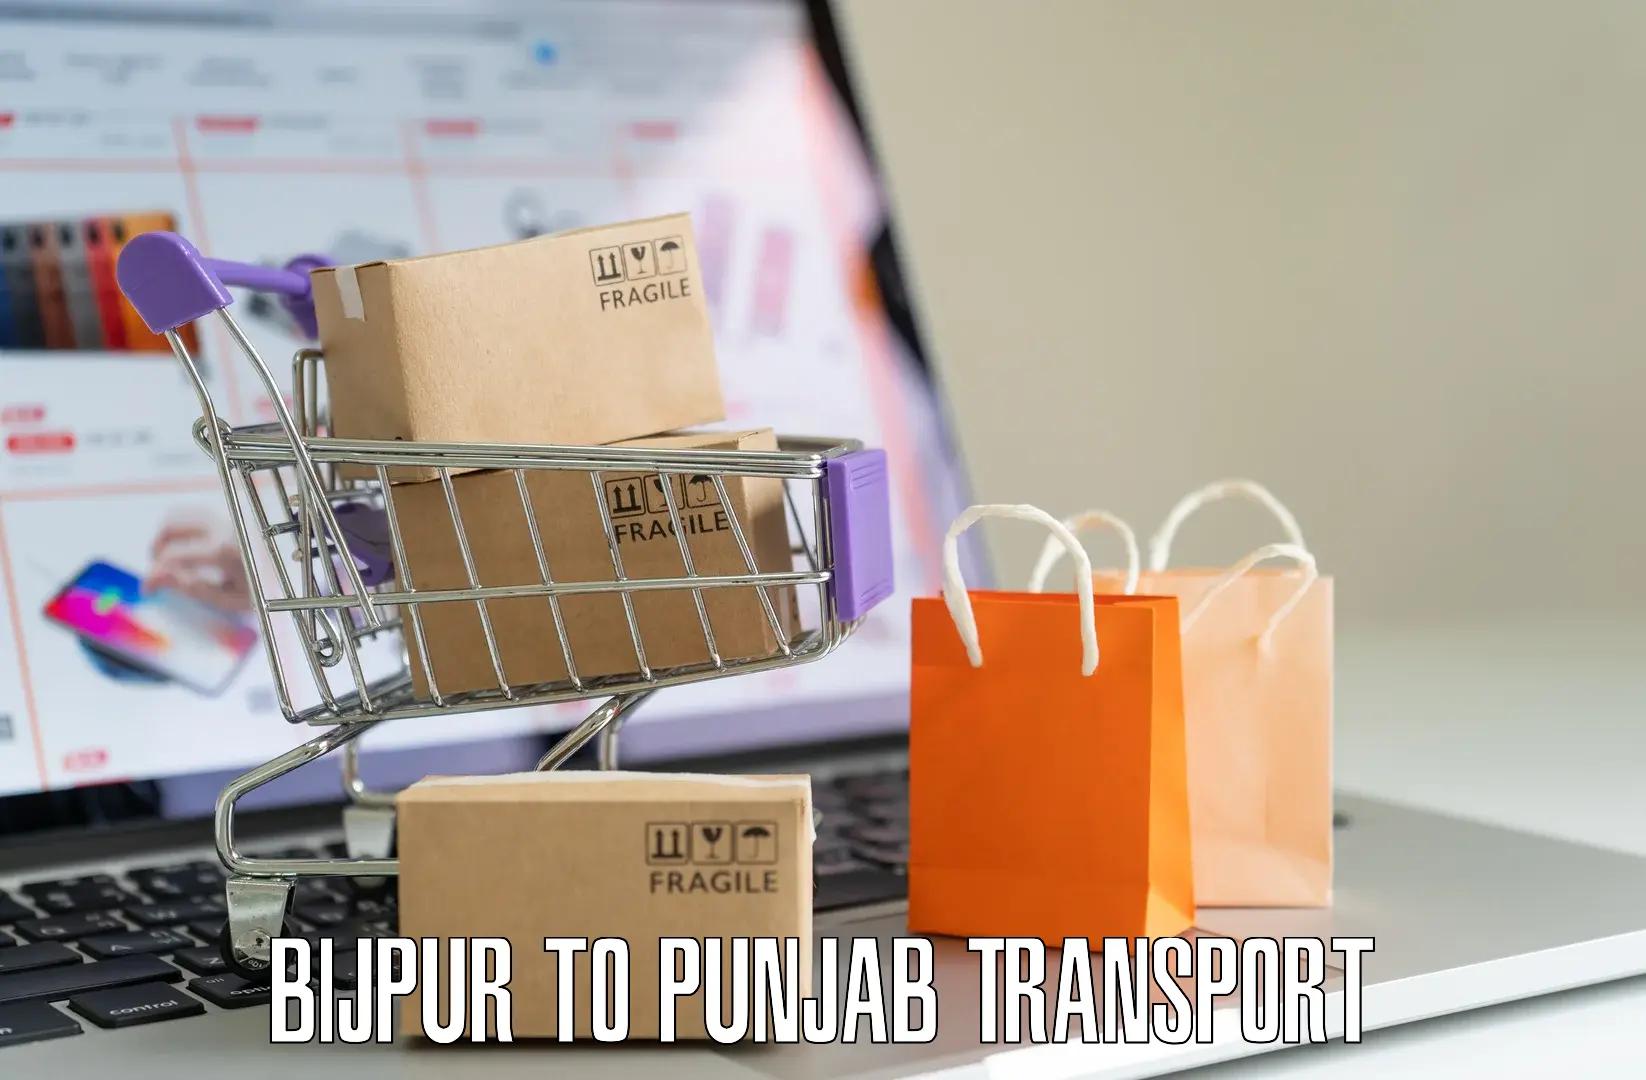 Vehicle transport services Bijpur to Sirhind Fatehgarh